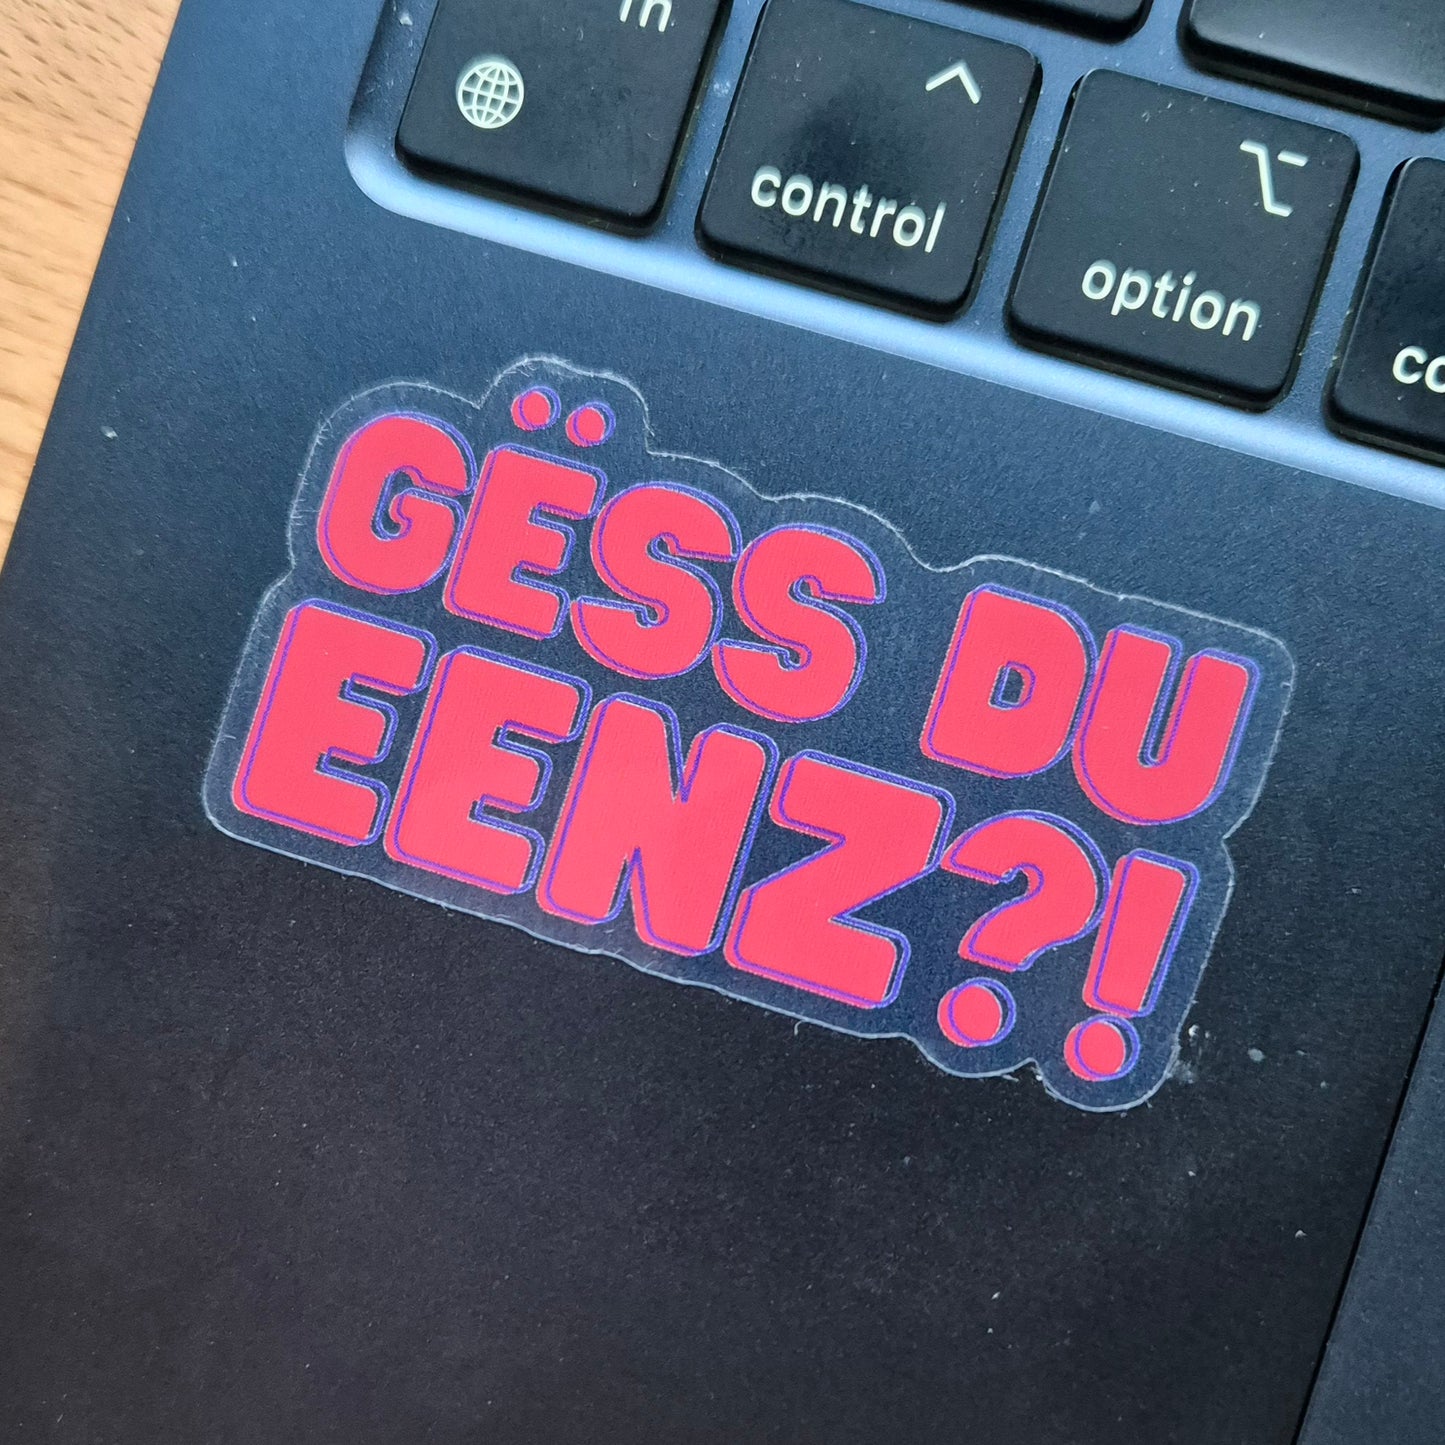 Gëss Du Eenz Sticker